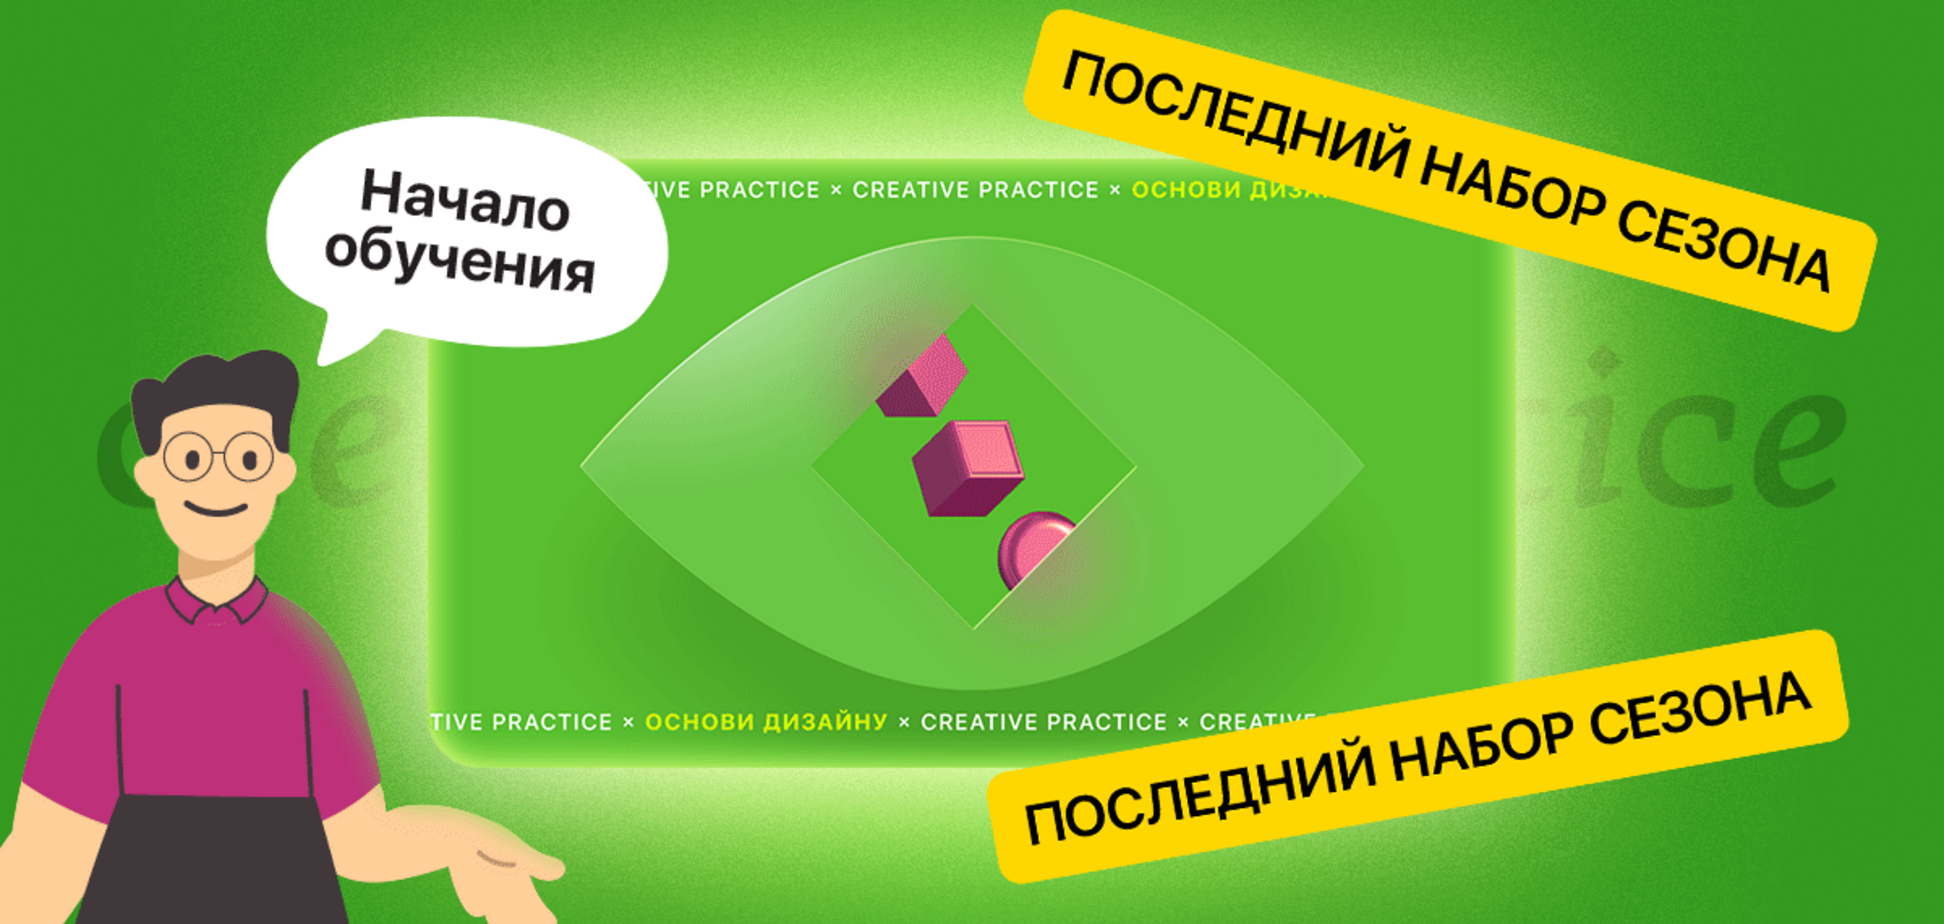 В Україні запустили безкоштовний онлайн-курс про дизайн і програму працевлаштування